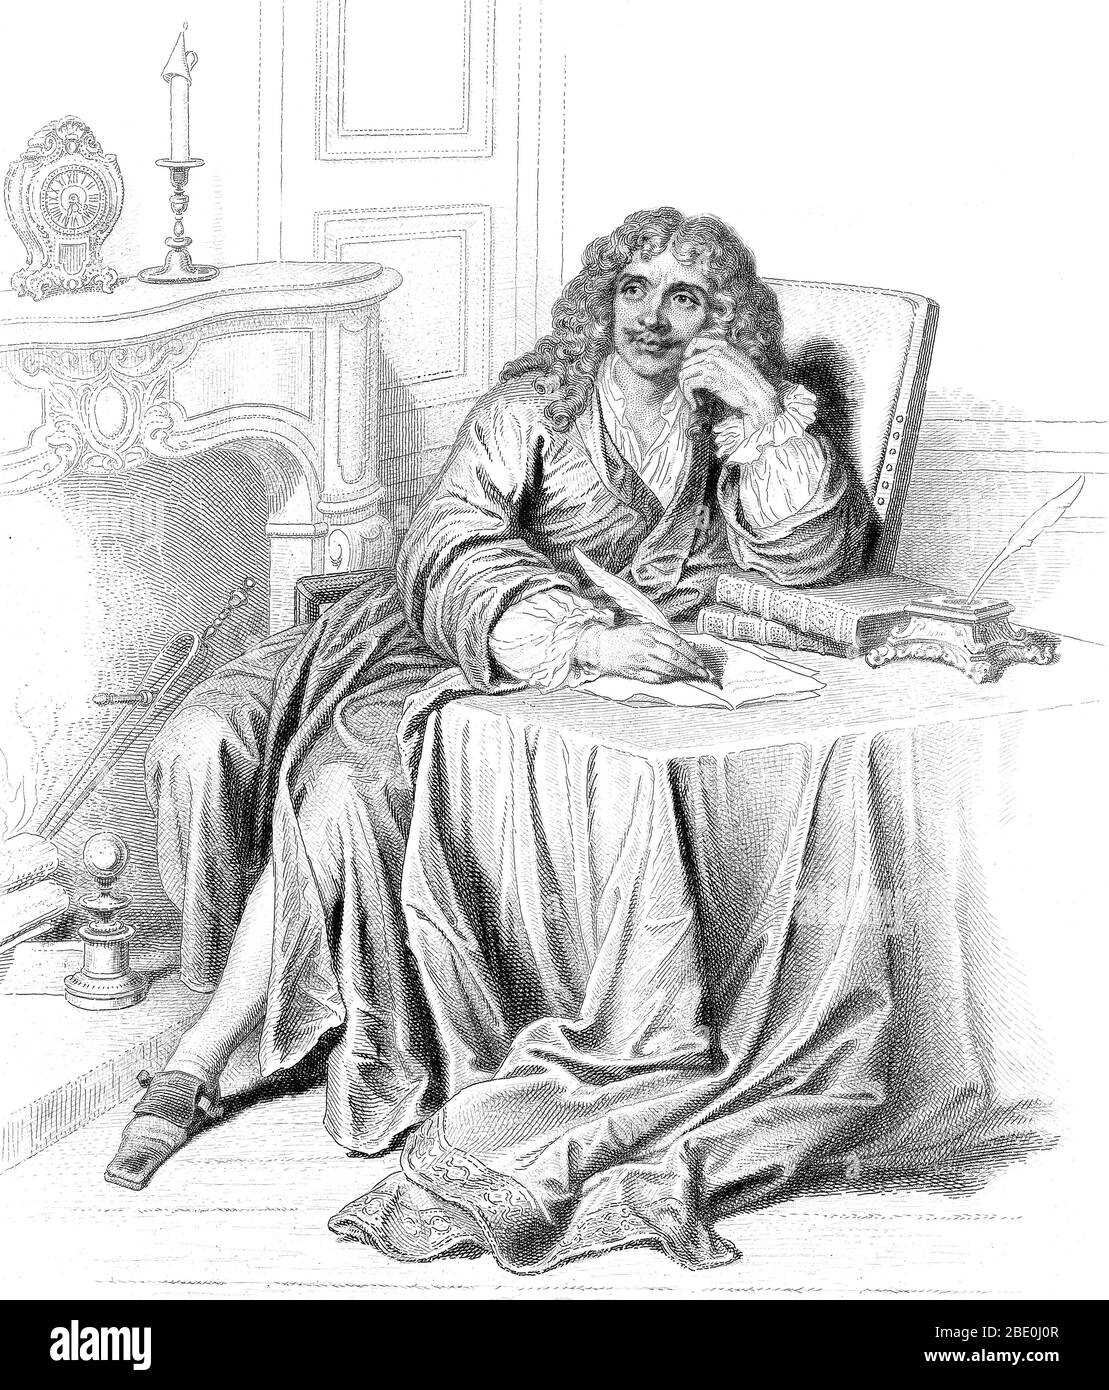 Jean-Baptiste Poquelin, connu sous le nom de scène Molière (15 janvier 1622 - 17 février 1673) était un dramaturge et acteur français considéré comme l'un des plus grands maîtres de la comédie dans la littérature occidentale. Treize ans en tant qu'acteur itinérant l'a aidé à polir ses capacités de bande dessinée pendant qu'il a commencé à écrire, combinant les éléments Commedia dell'arte avec la comédie française plus raffinée. Bien qu'il ait reçu l'adulation du tribunal et des Parisiens, les satire de Molière ont attiré des critiques de la part des moralistes et de l'Église catholique. Tartuffe et son attaque contre l'hypocrisie religieuse perçue ont reçu c Banque D'Images